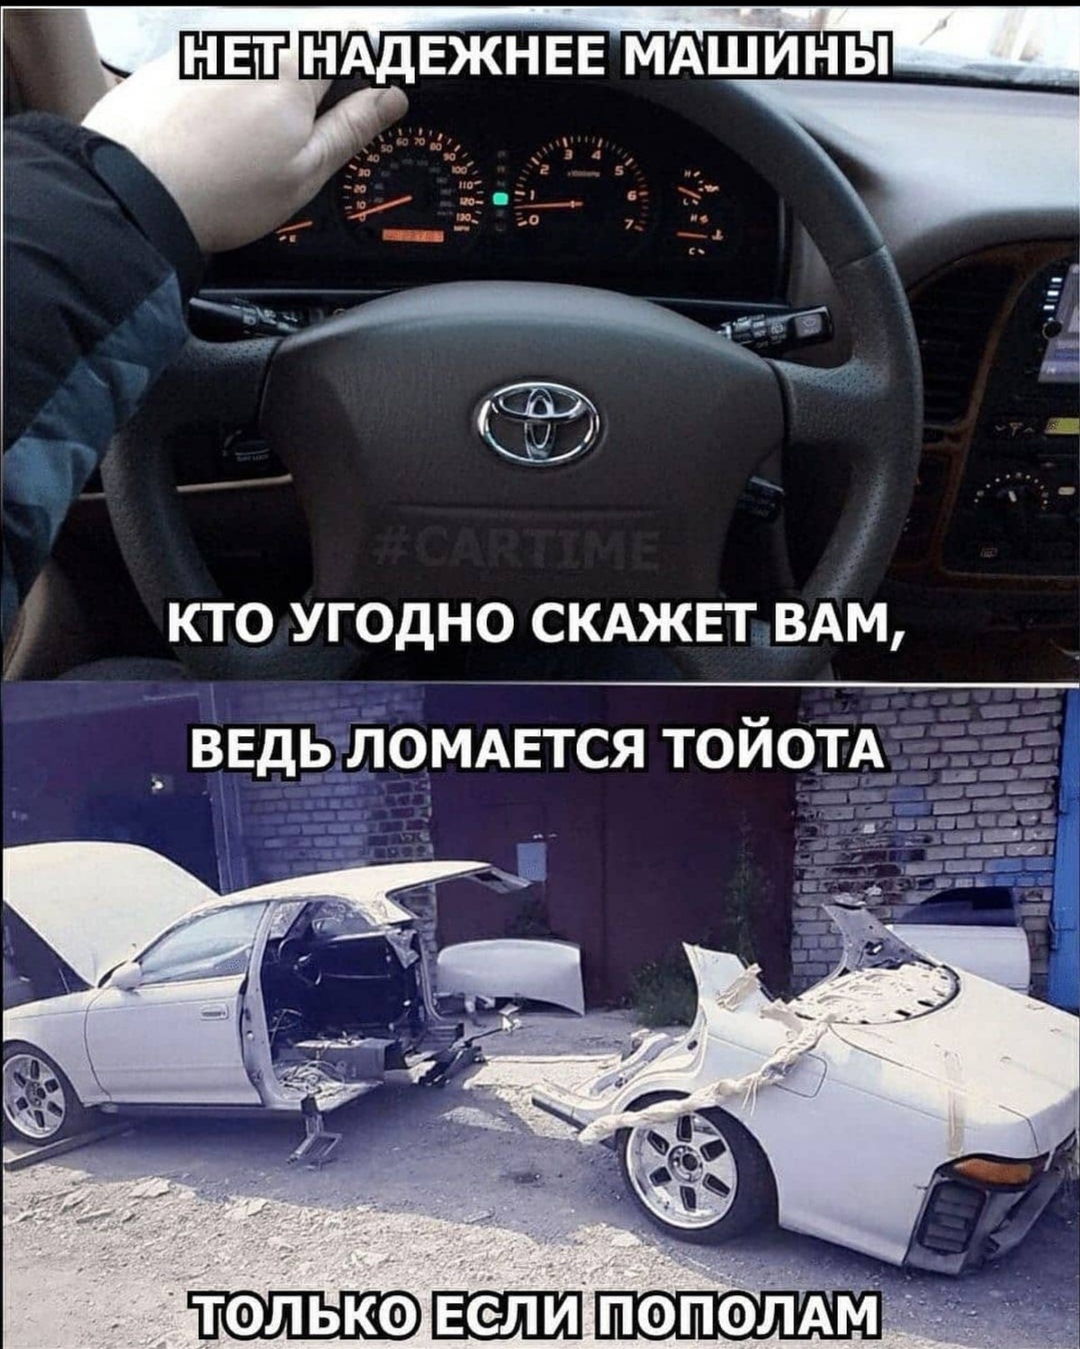 Почему ломается. Тойота не ломается. Ведь ломается Тойота. Тоёта не ломаецца. Тойота ломается только пополам.